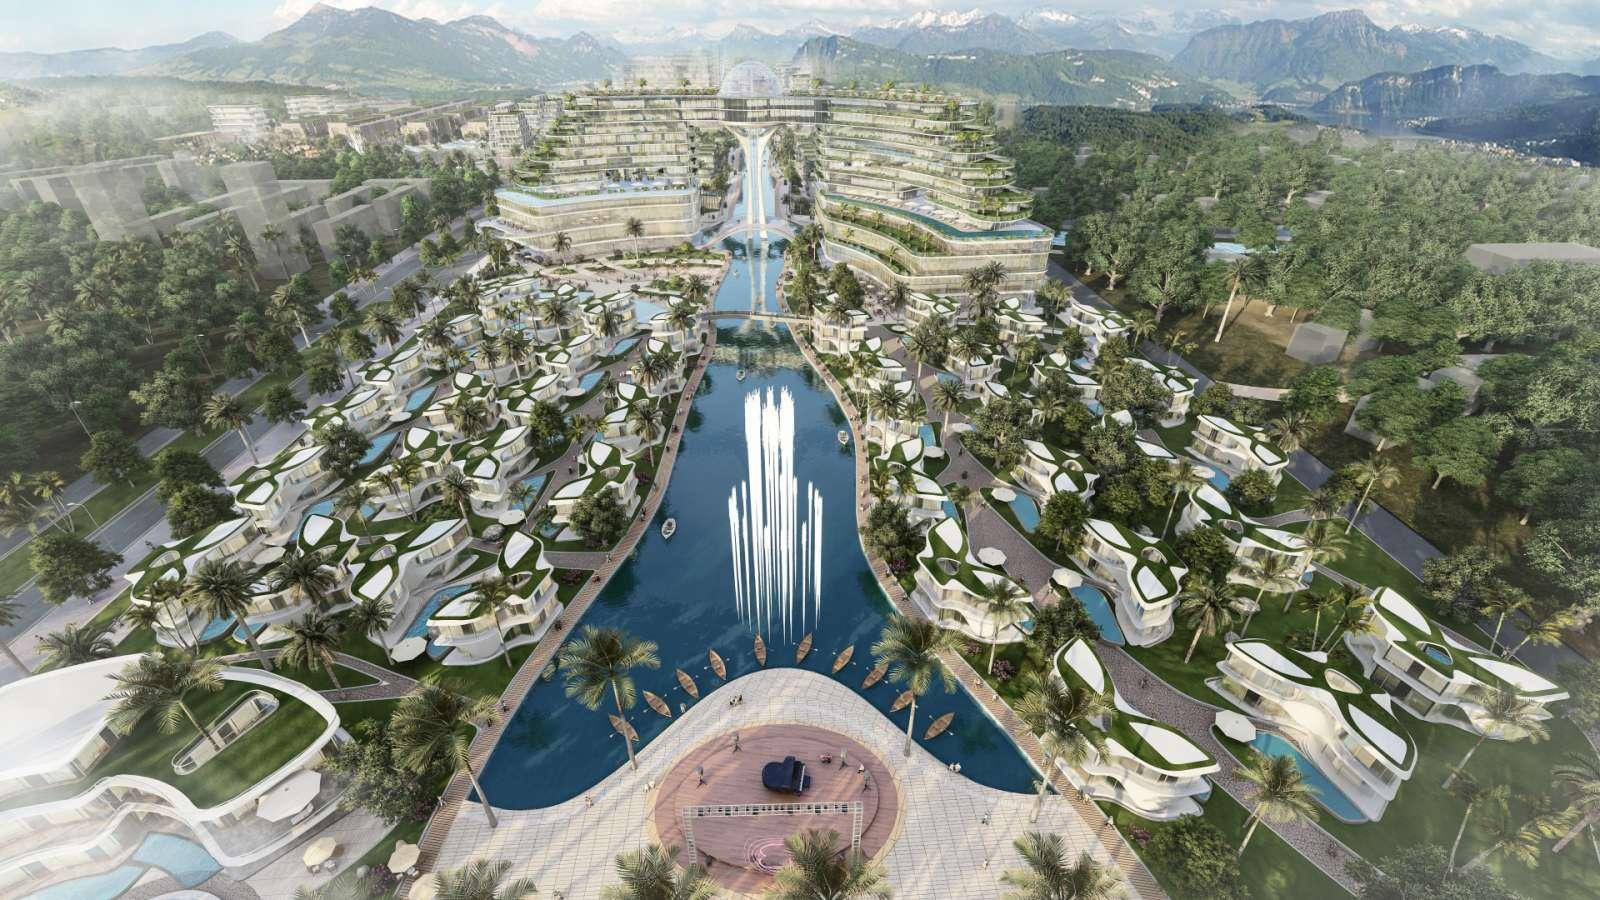 Tân Hoàng Minh chuẩn bị khởi công siêu dự án hơn 1 tỉ đô tại Phú Quốc - ảnh 1  - tan-hoang-minh-1-6727 - Tân Hoàng Minh chuẩn bị khởi công siêu dự án hơn 1 tỉ đô tại Phú Quốc